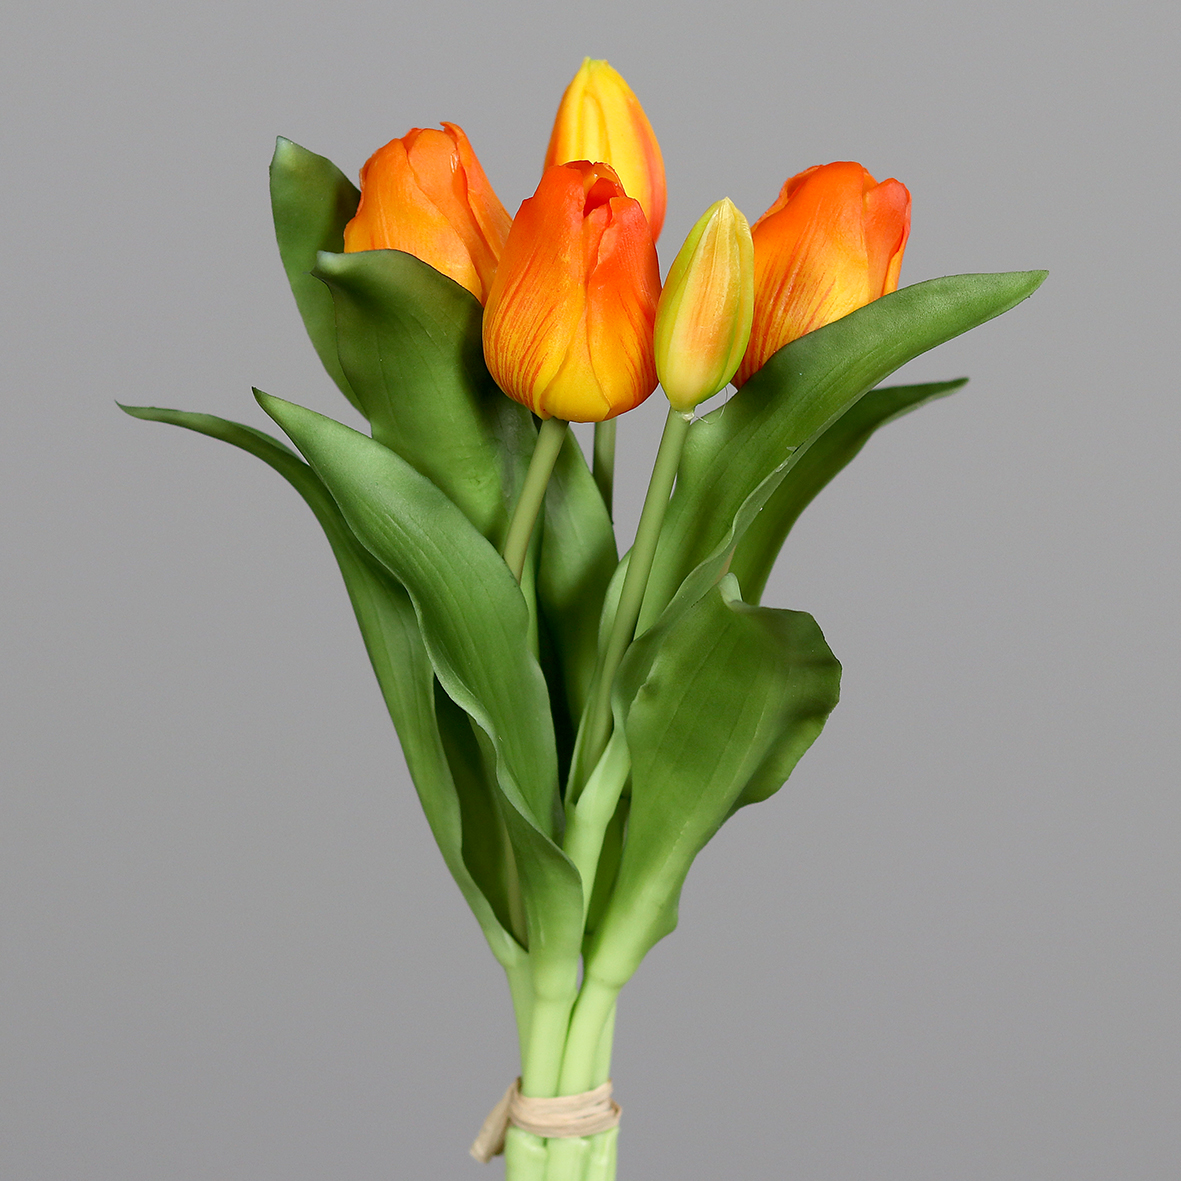 Tulpenbund Nature Real Touch 32x20cm orange mit 5 Blüten DP Kunstblumen künstliche Blumen Tulpen Latex